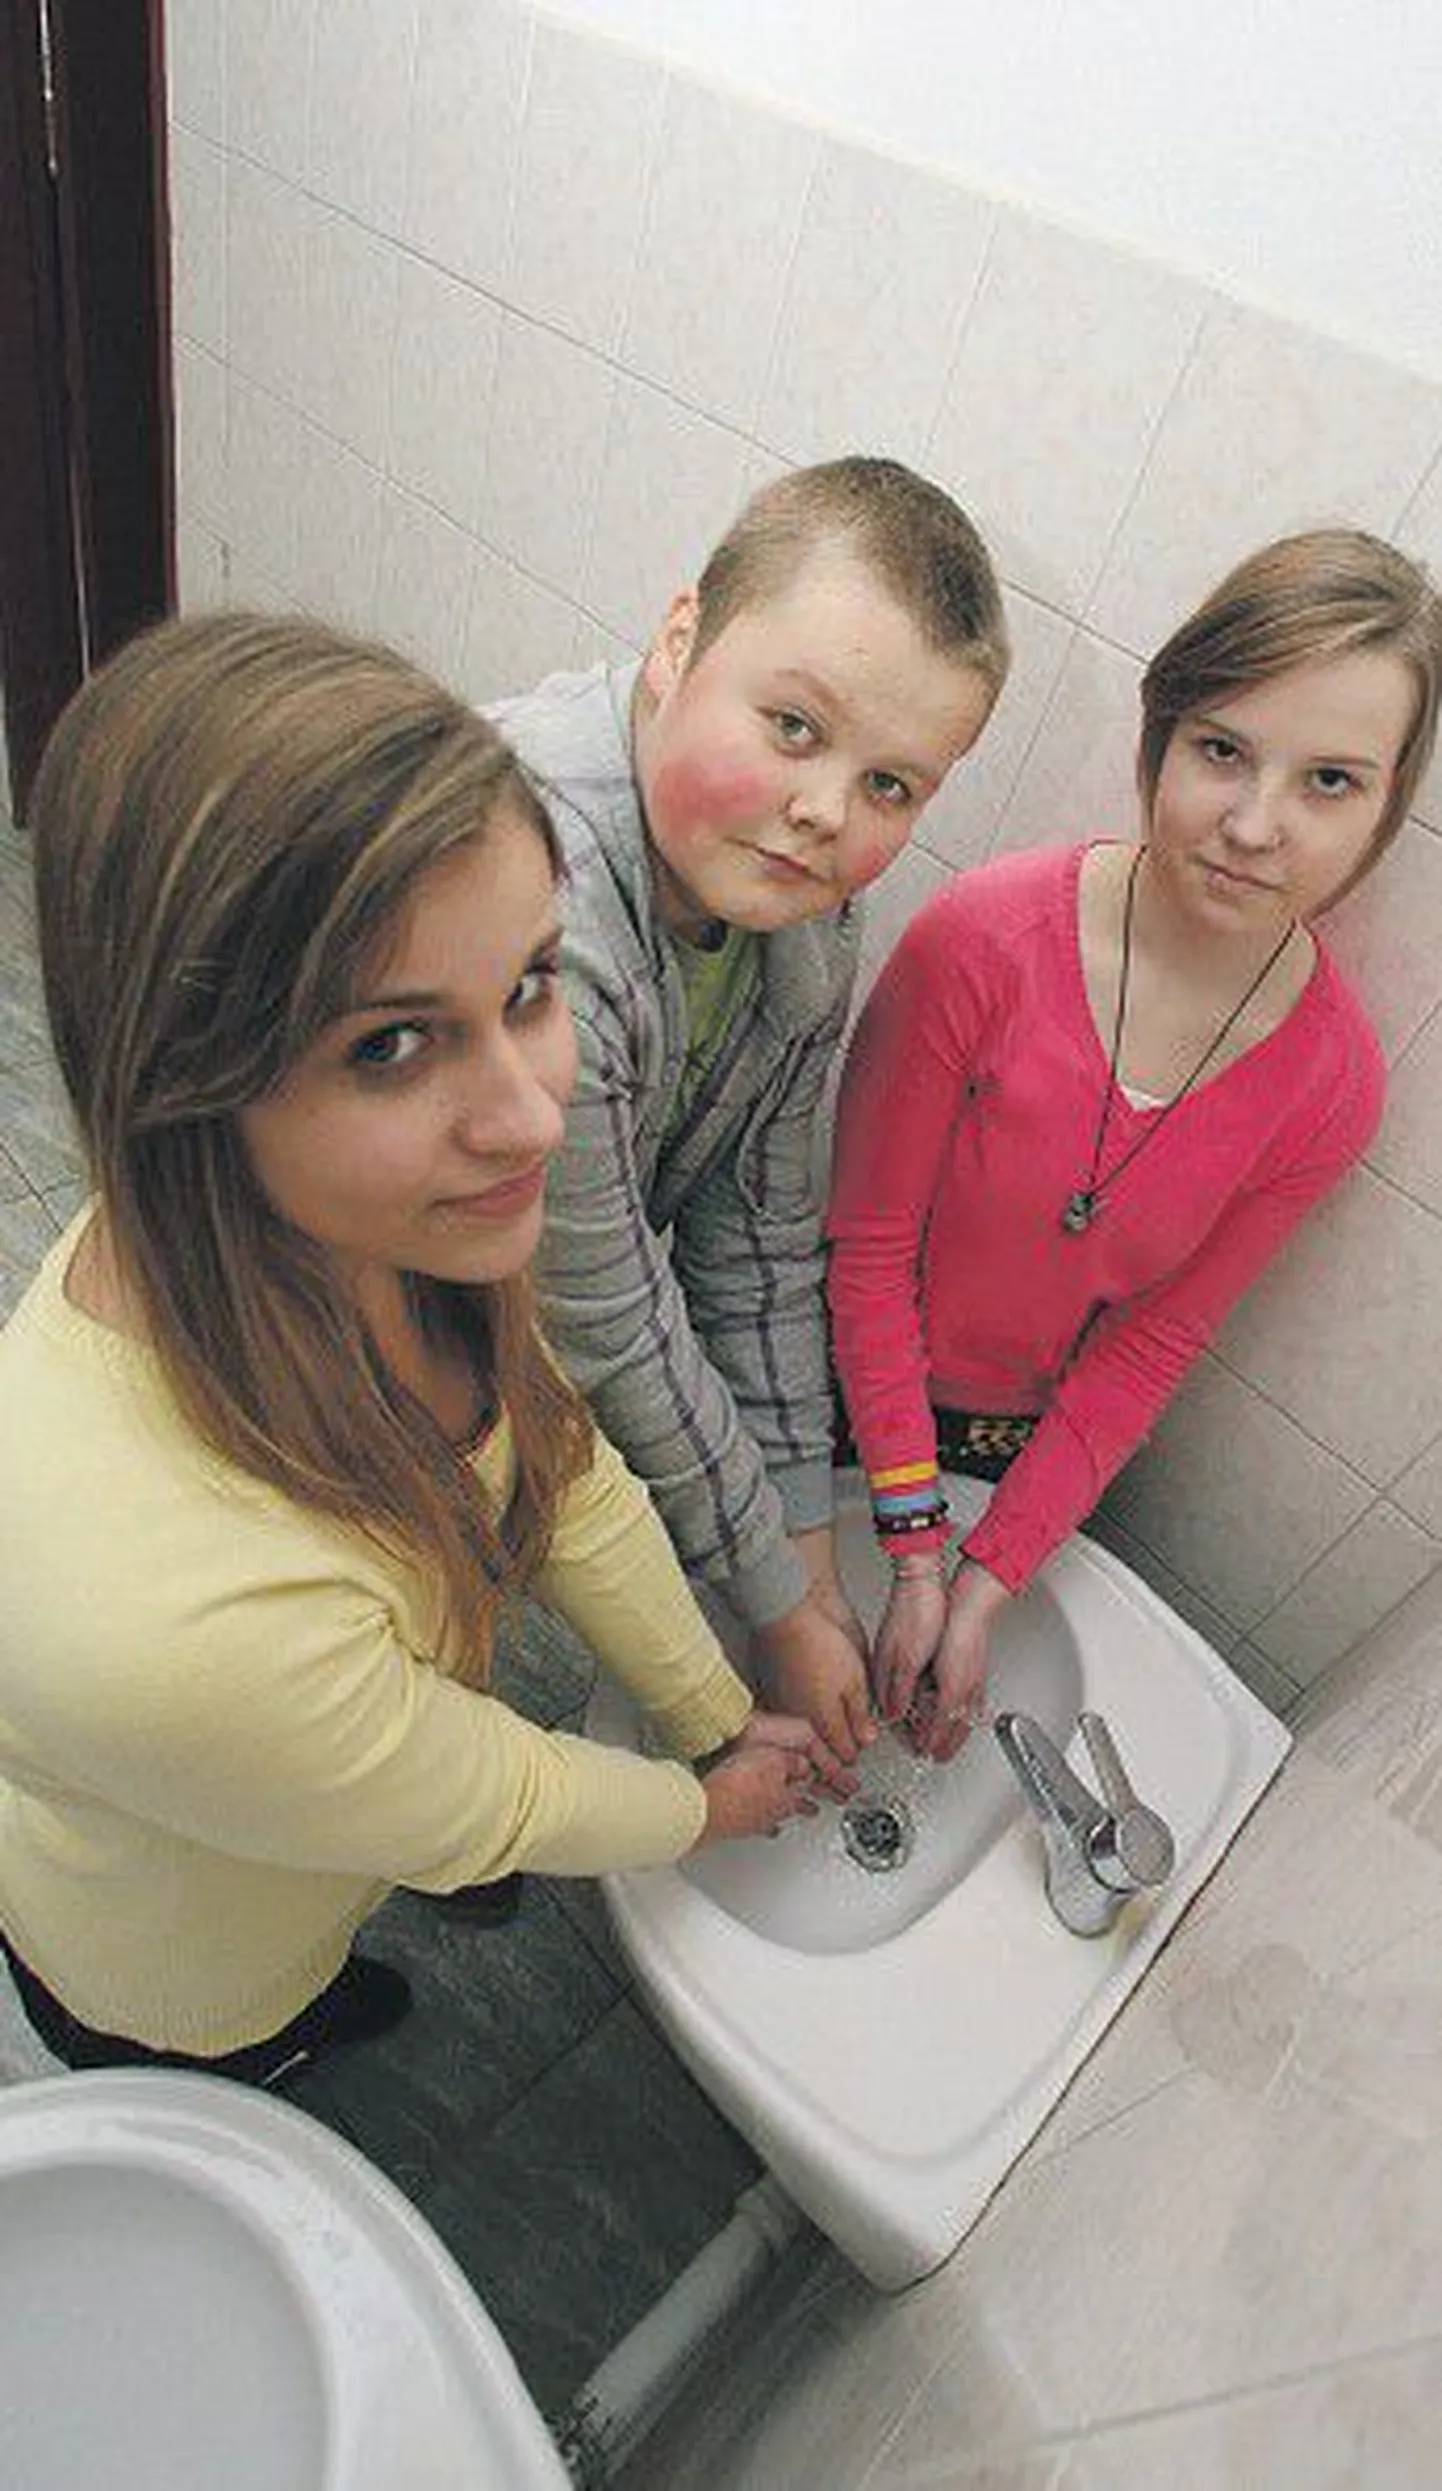 Ученики 7-го класса Пяэскюлаской гимназии Сеэлика Соллберг, Лийна Микуметс и Маркус Микк знают, как нужно правильно чихать и мыть руки.